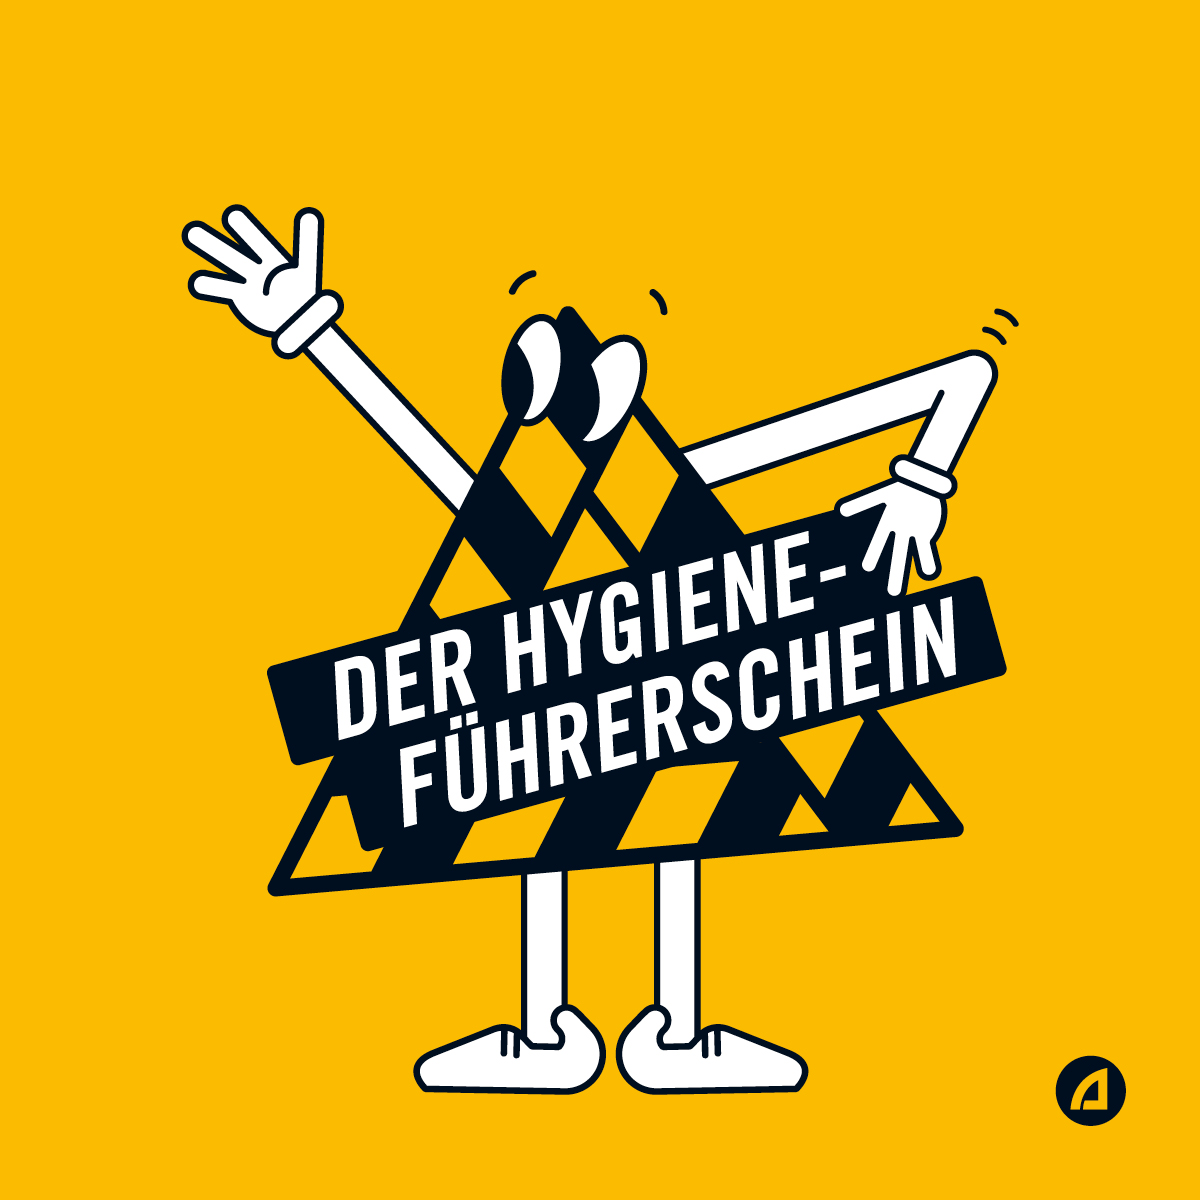 Hygiene-Führerschein